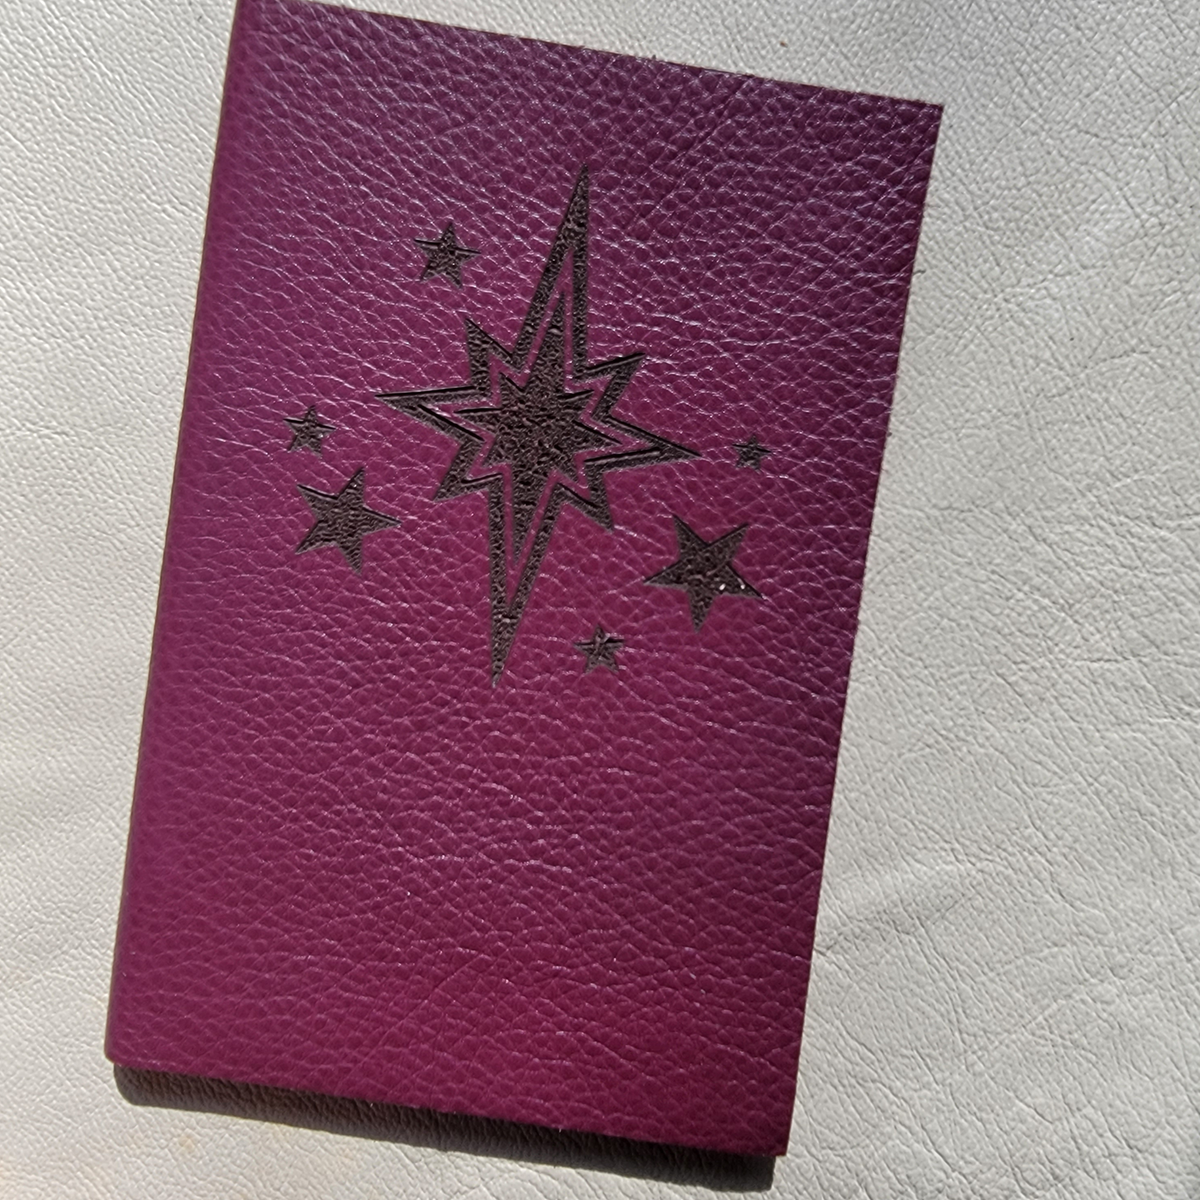 Star Pocket Journal (Choose Color)